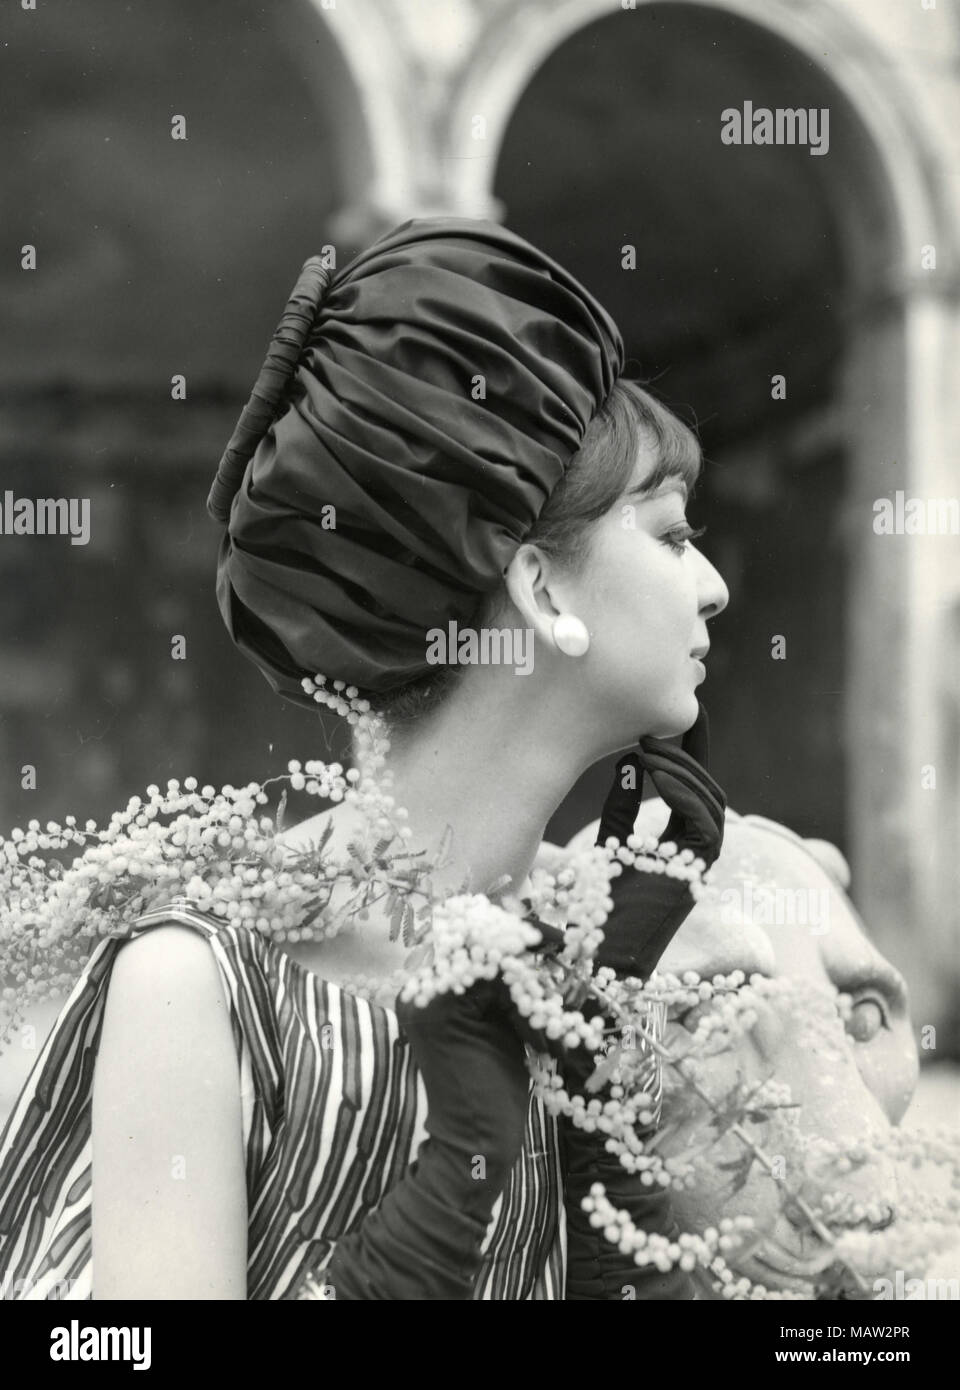 Robe des années 1960 Banque de photographies et d'images à haute résolution  - Alamy